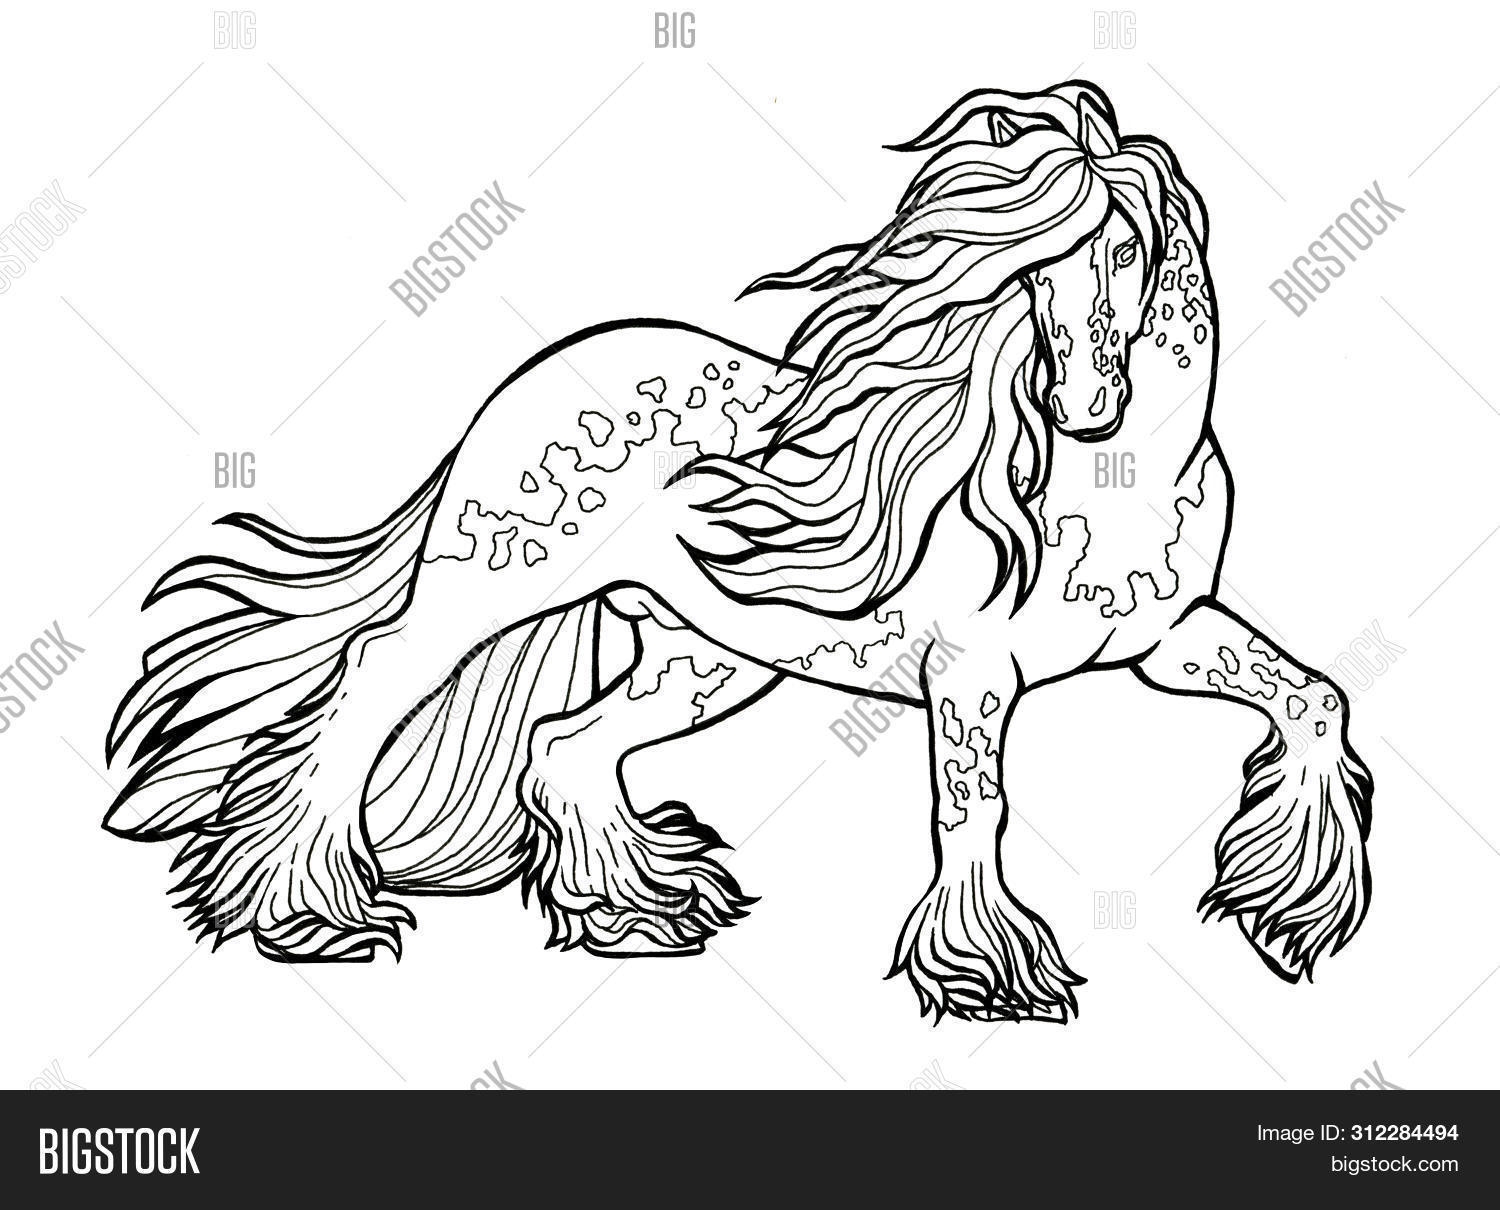 Рисунок коня прикольный